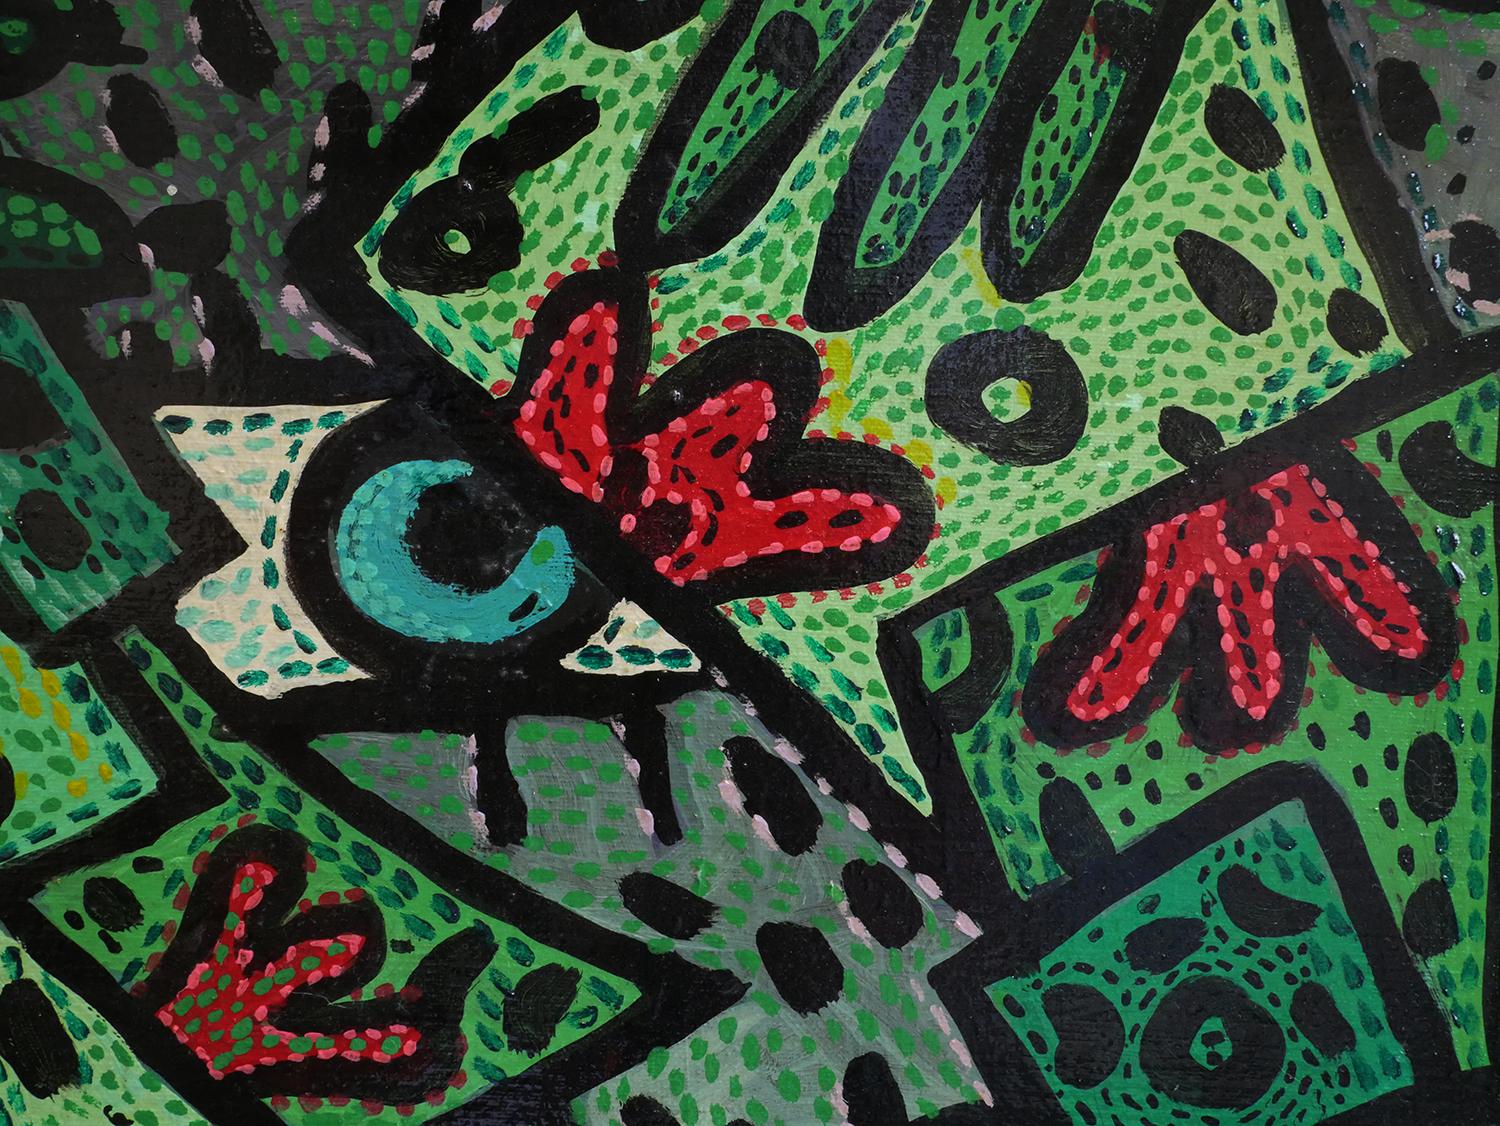 Peinture abstraite contemporaine verte et rouge de l'artiste Richard Fluhr de Houston, TX. Cette peinture représente des yeux bleus abstraits sur un fond de formes vertes abstraites qui ressemblent à des mains et peut-être à des bâtiments. Cette